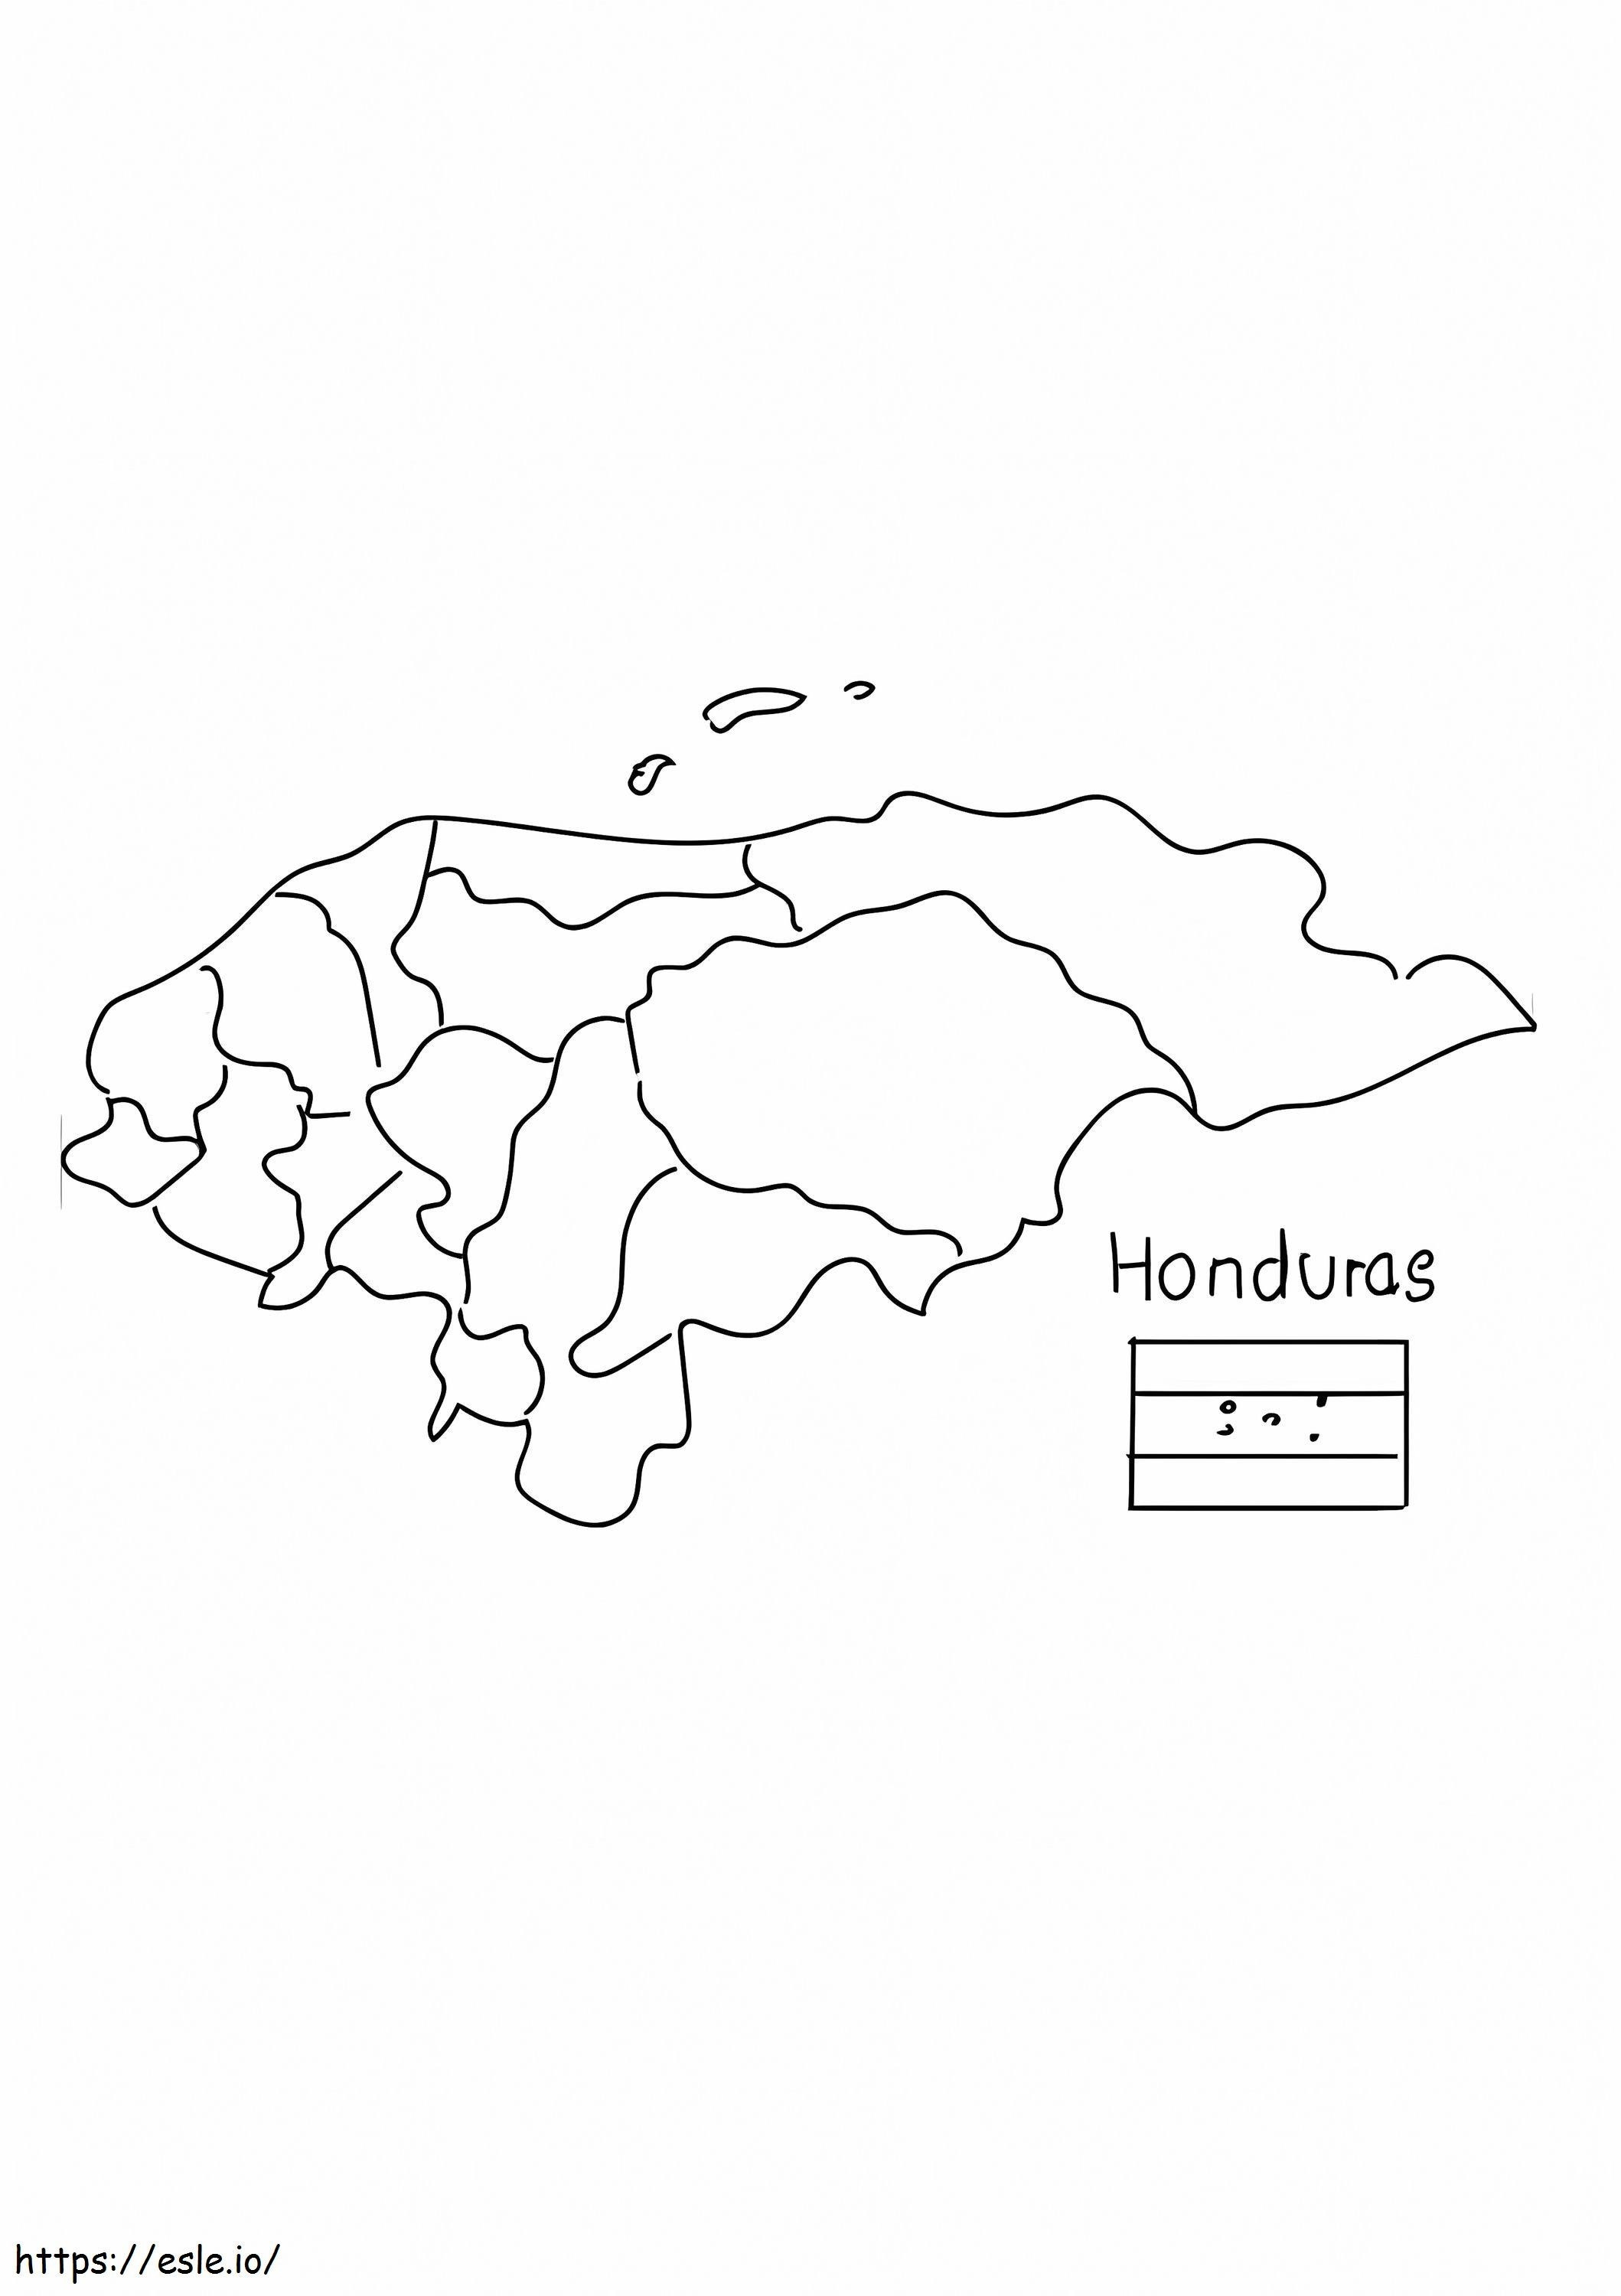 Honduras kaart kleurplaat kleurplaat